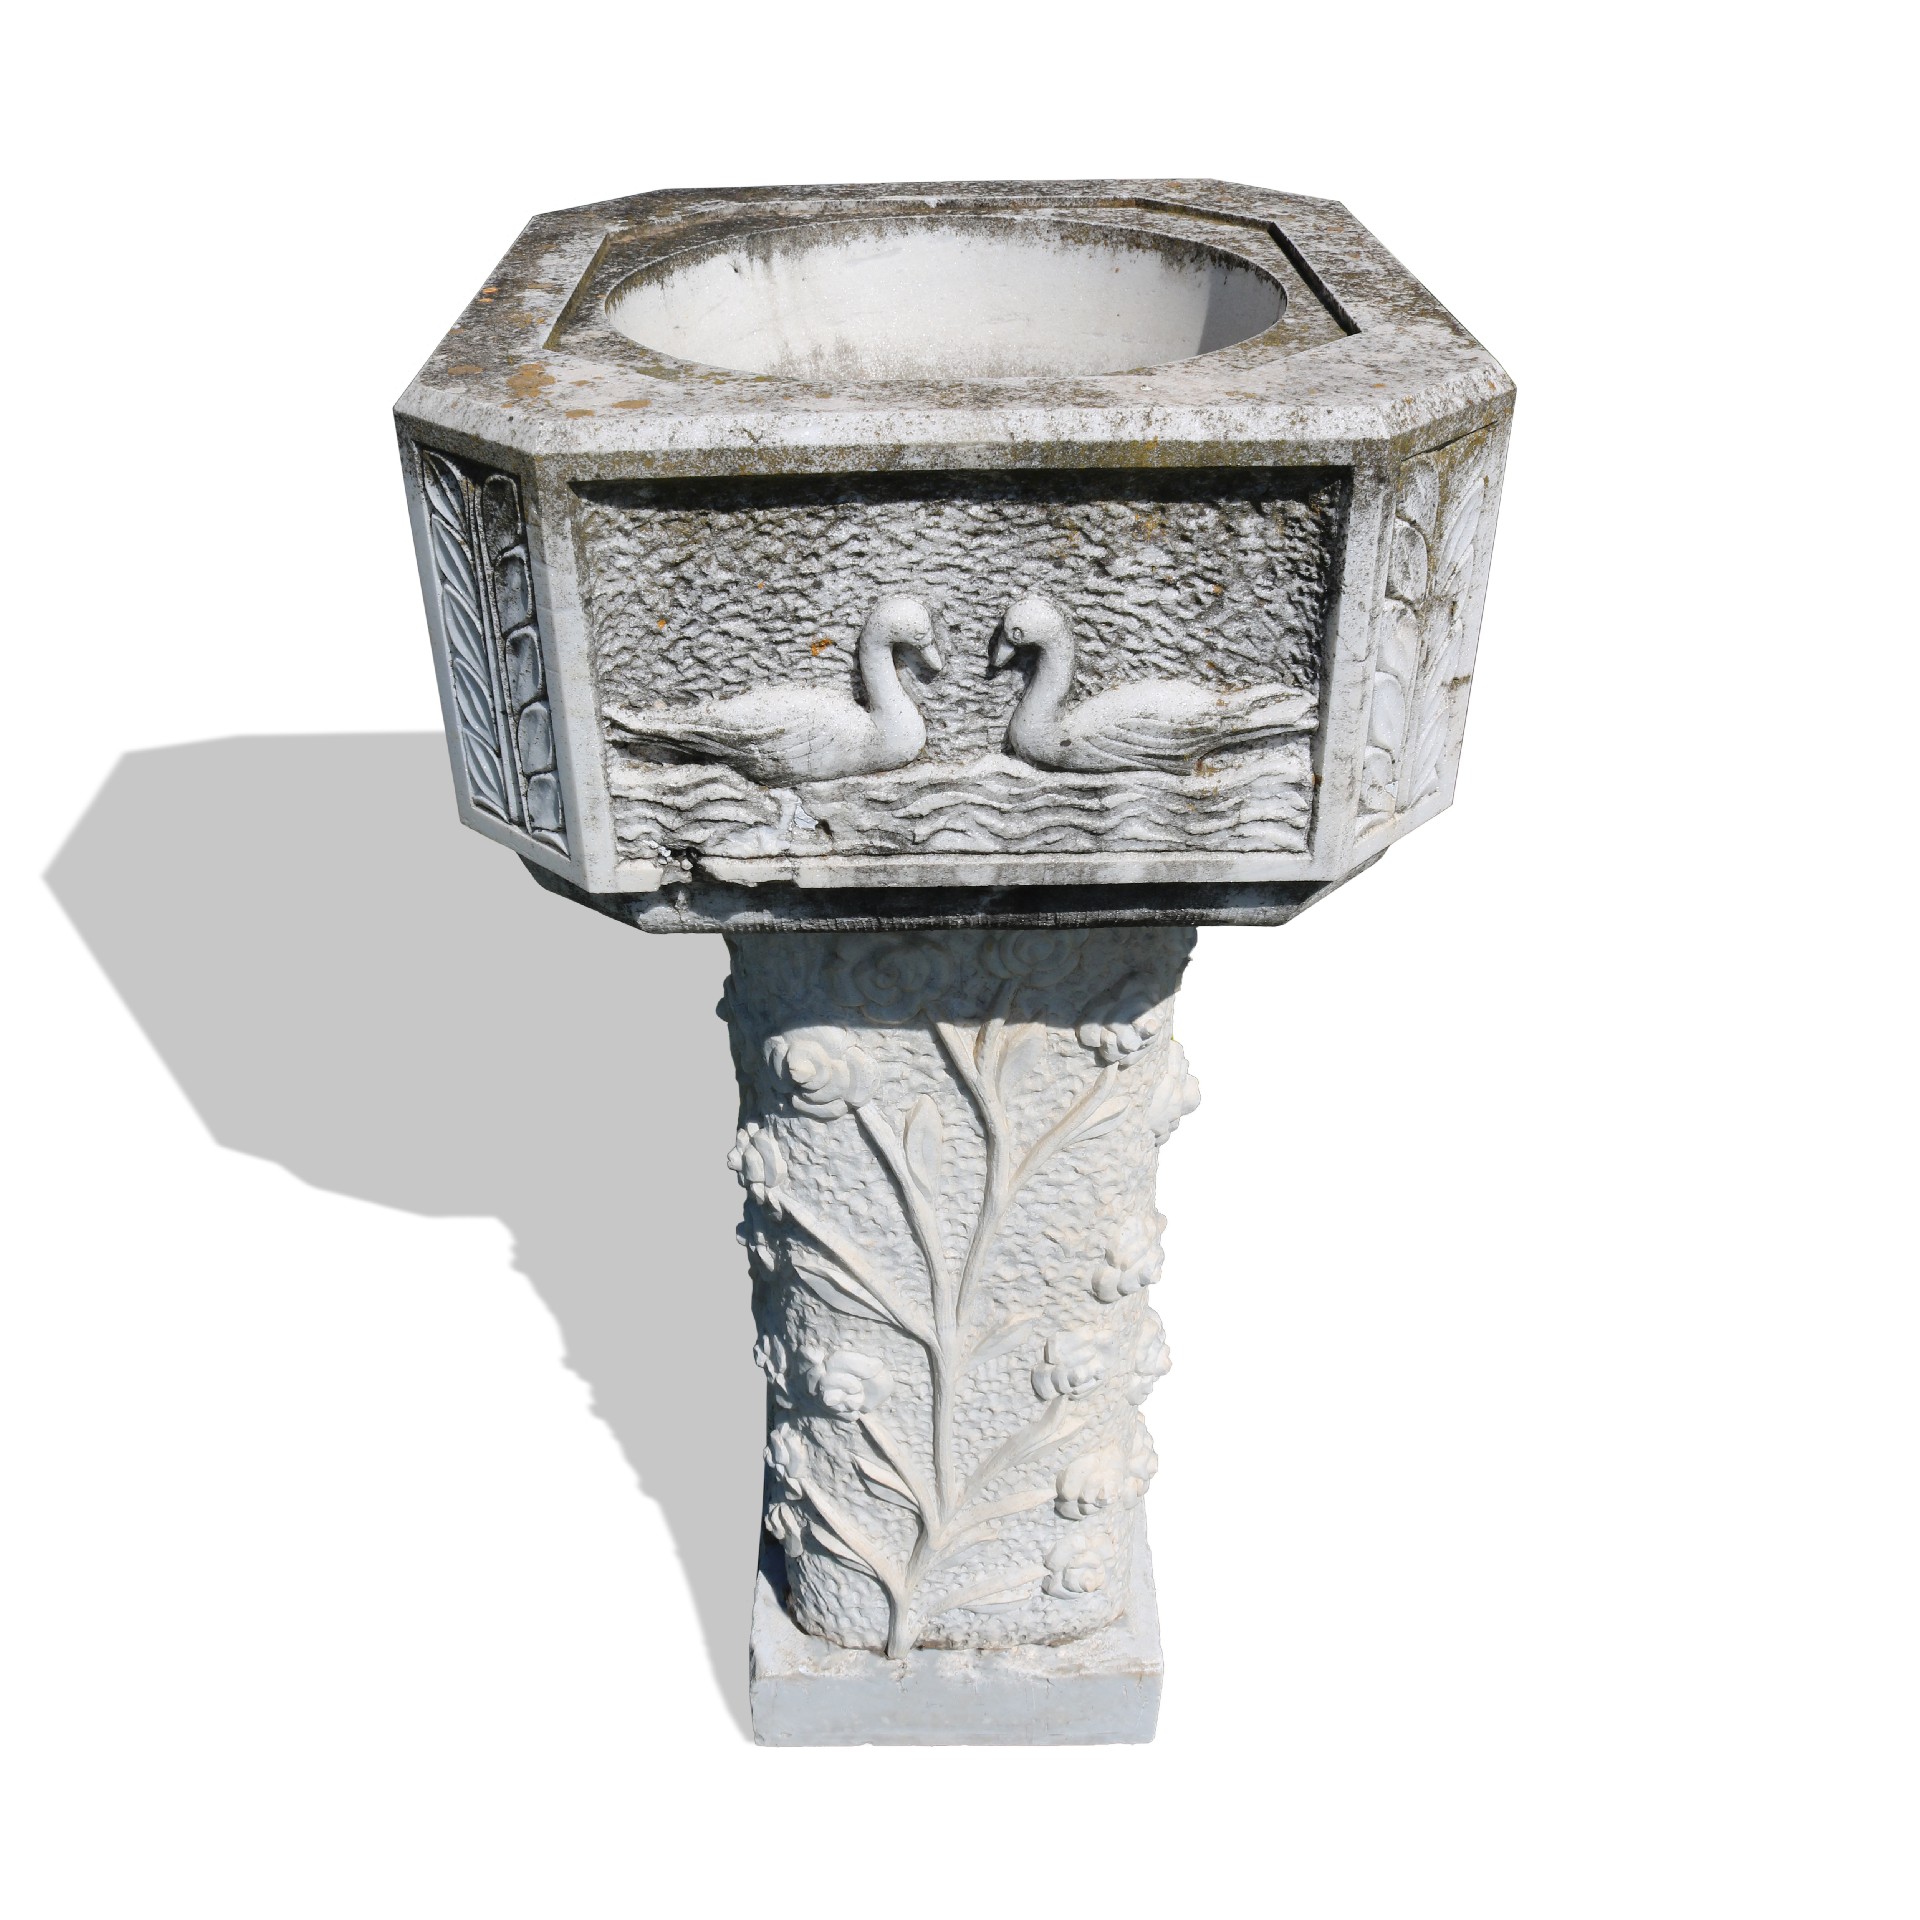 Bordo di fontana in pietra. Epoca 1800 - 1